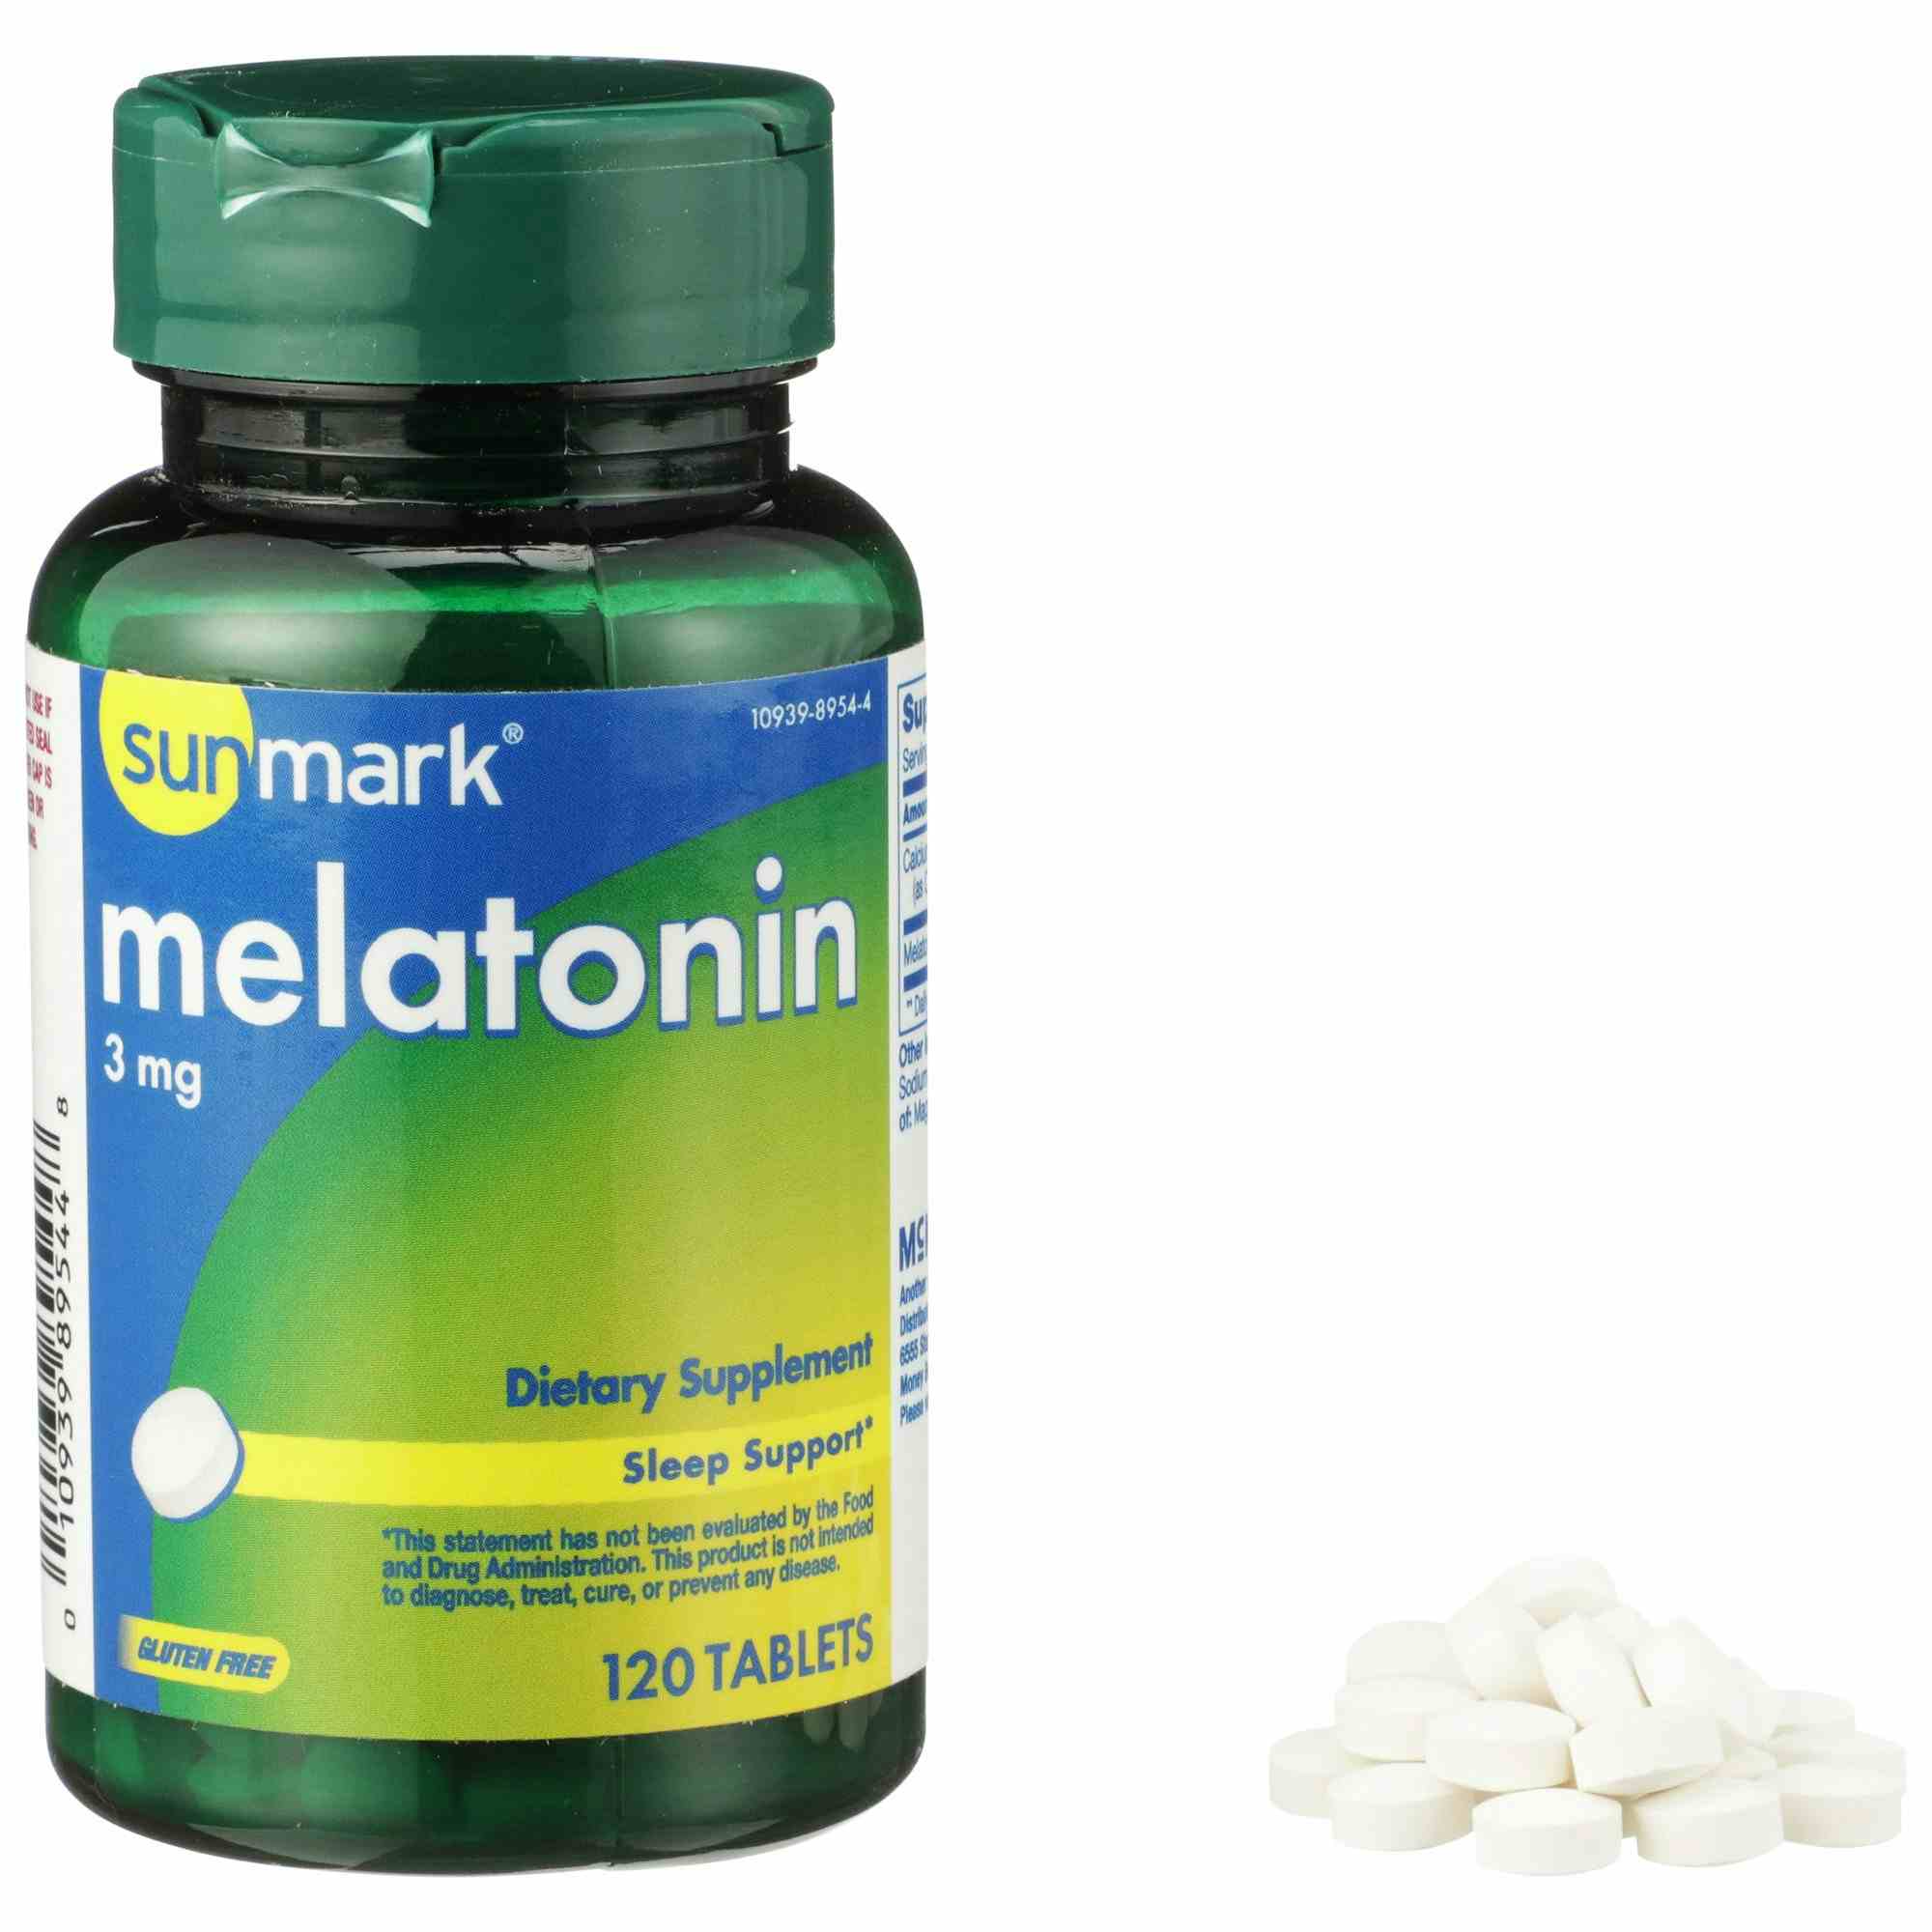 Sunmark Melatonin Dietary Supplement, 3 mg, 120 Tablets, 01093989544, 1 Bottle